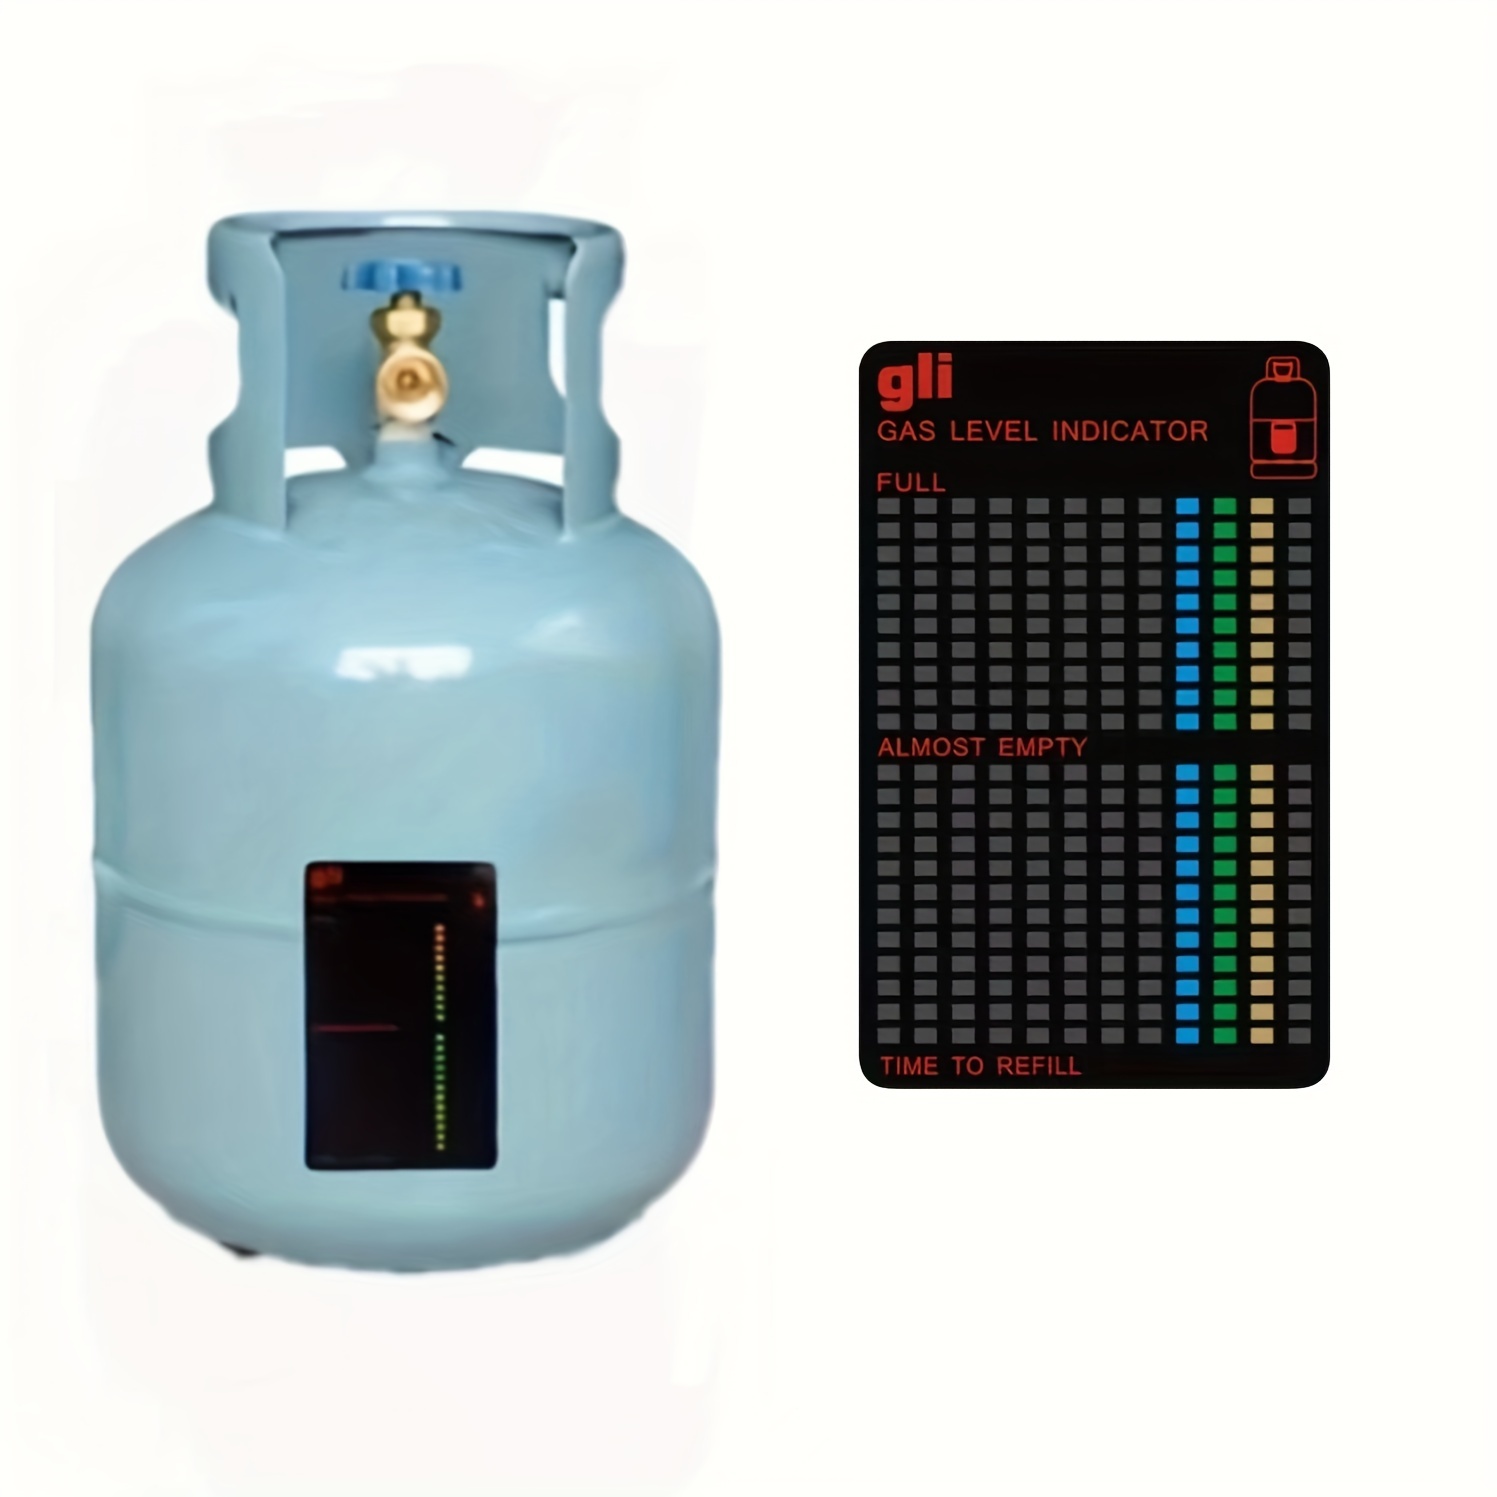 Homaisson Magnetic Gas Level Indicator, 8 PCS Reusable Propane Fuel Level  Indicators, Propane Gas Tank Gauge, Butane Gas Level Indicator for Home